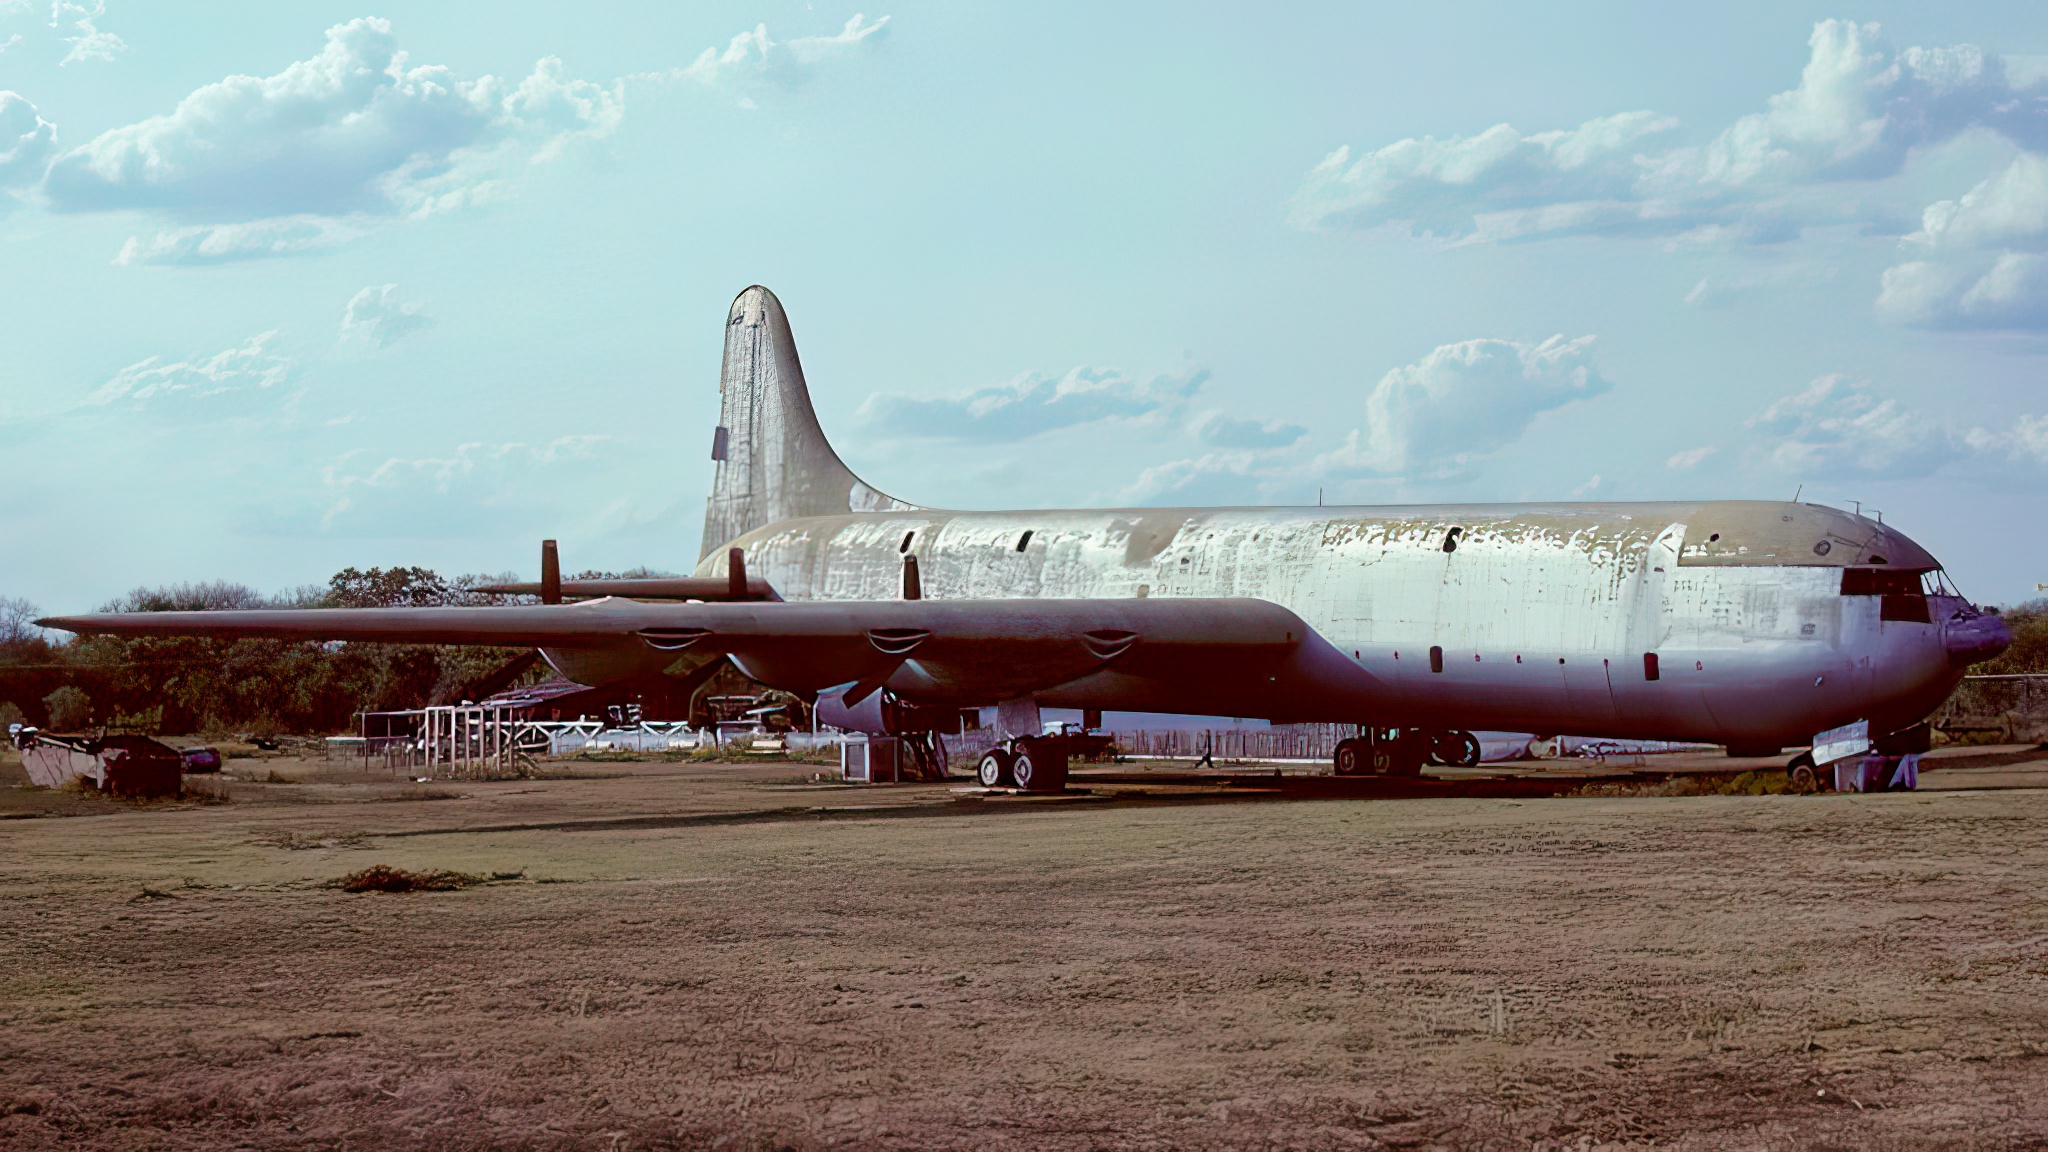 Convair XC-99 at San Antonio